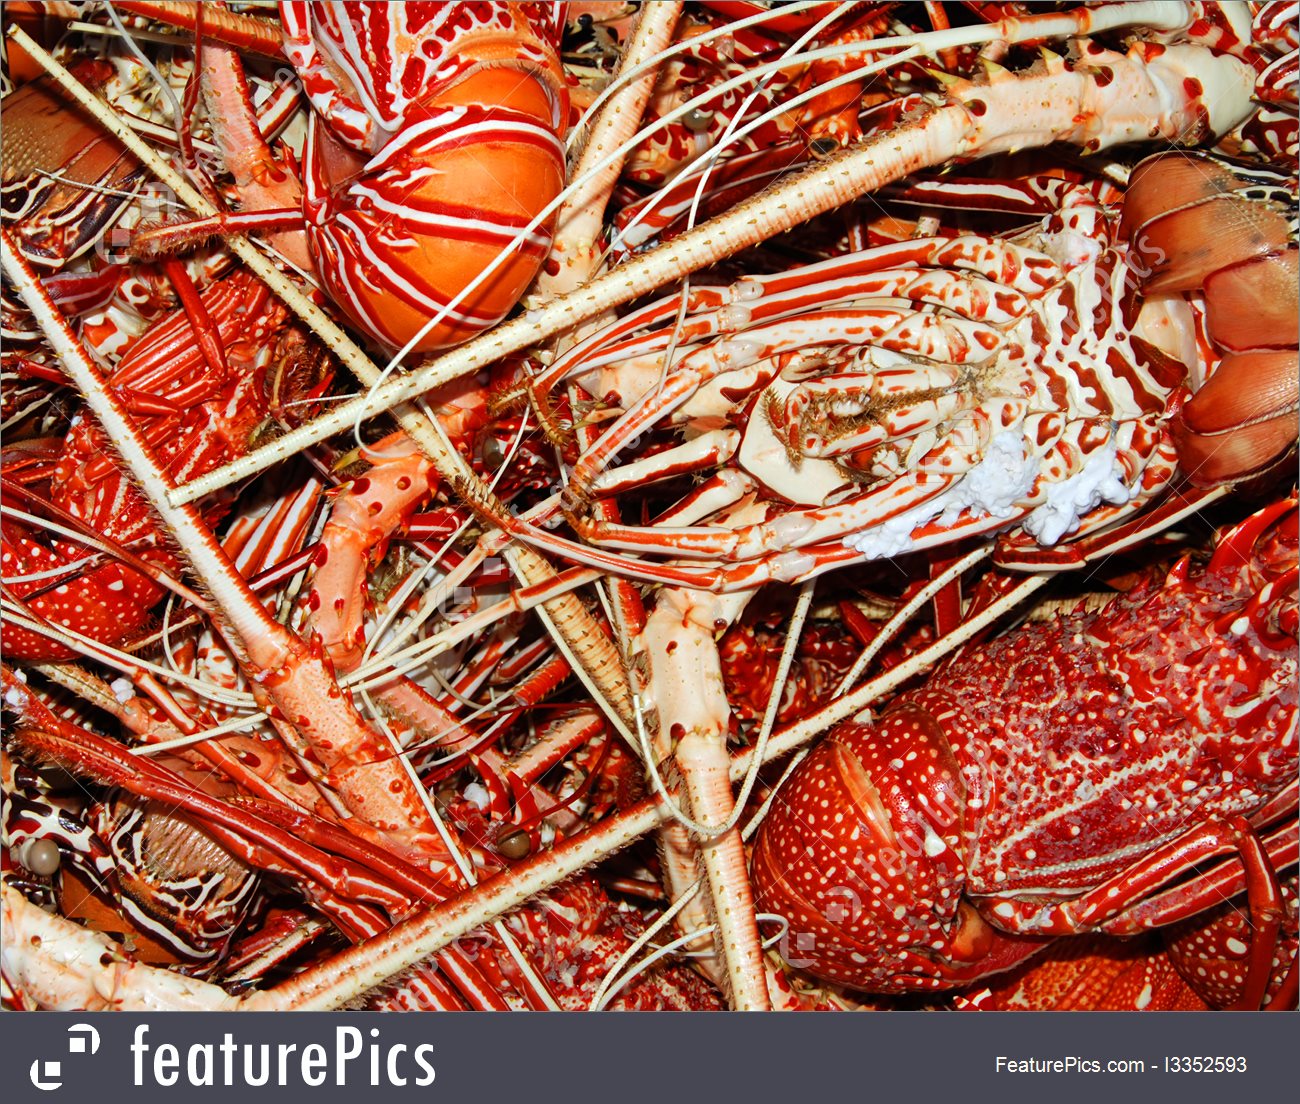 Lobster Background